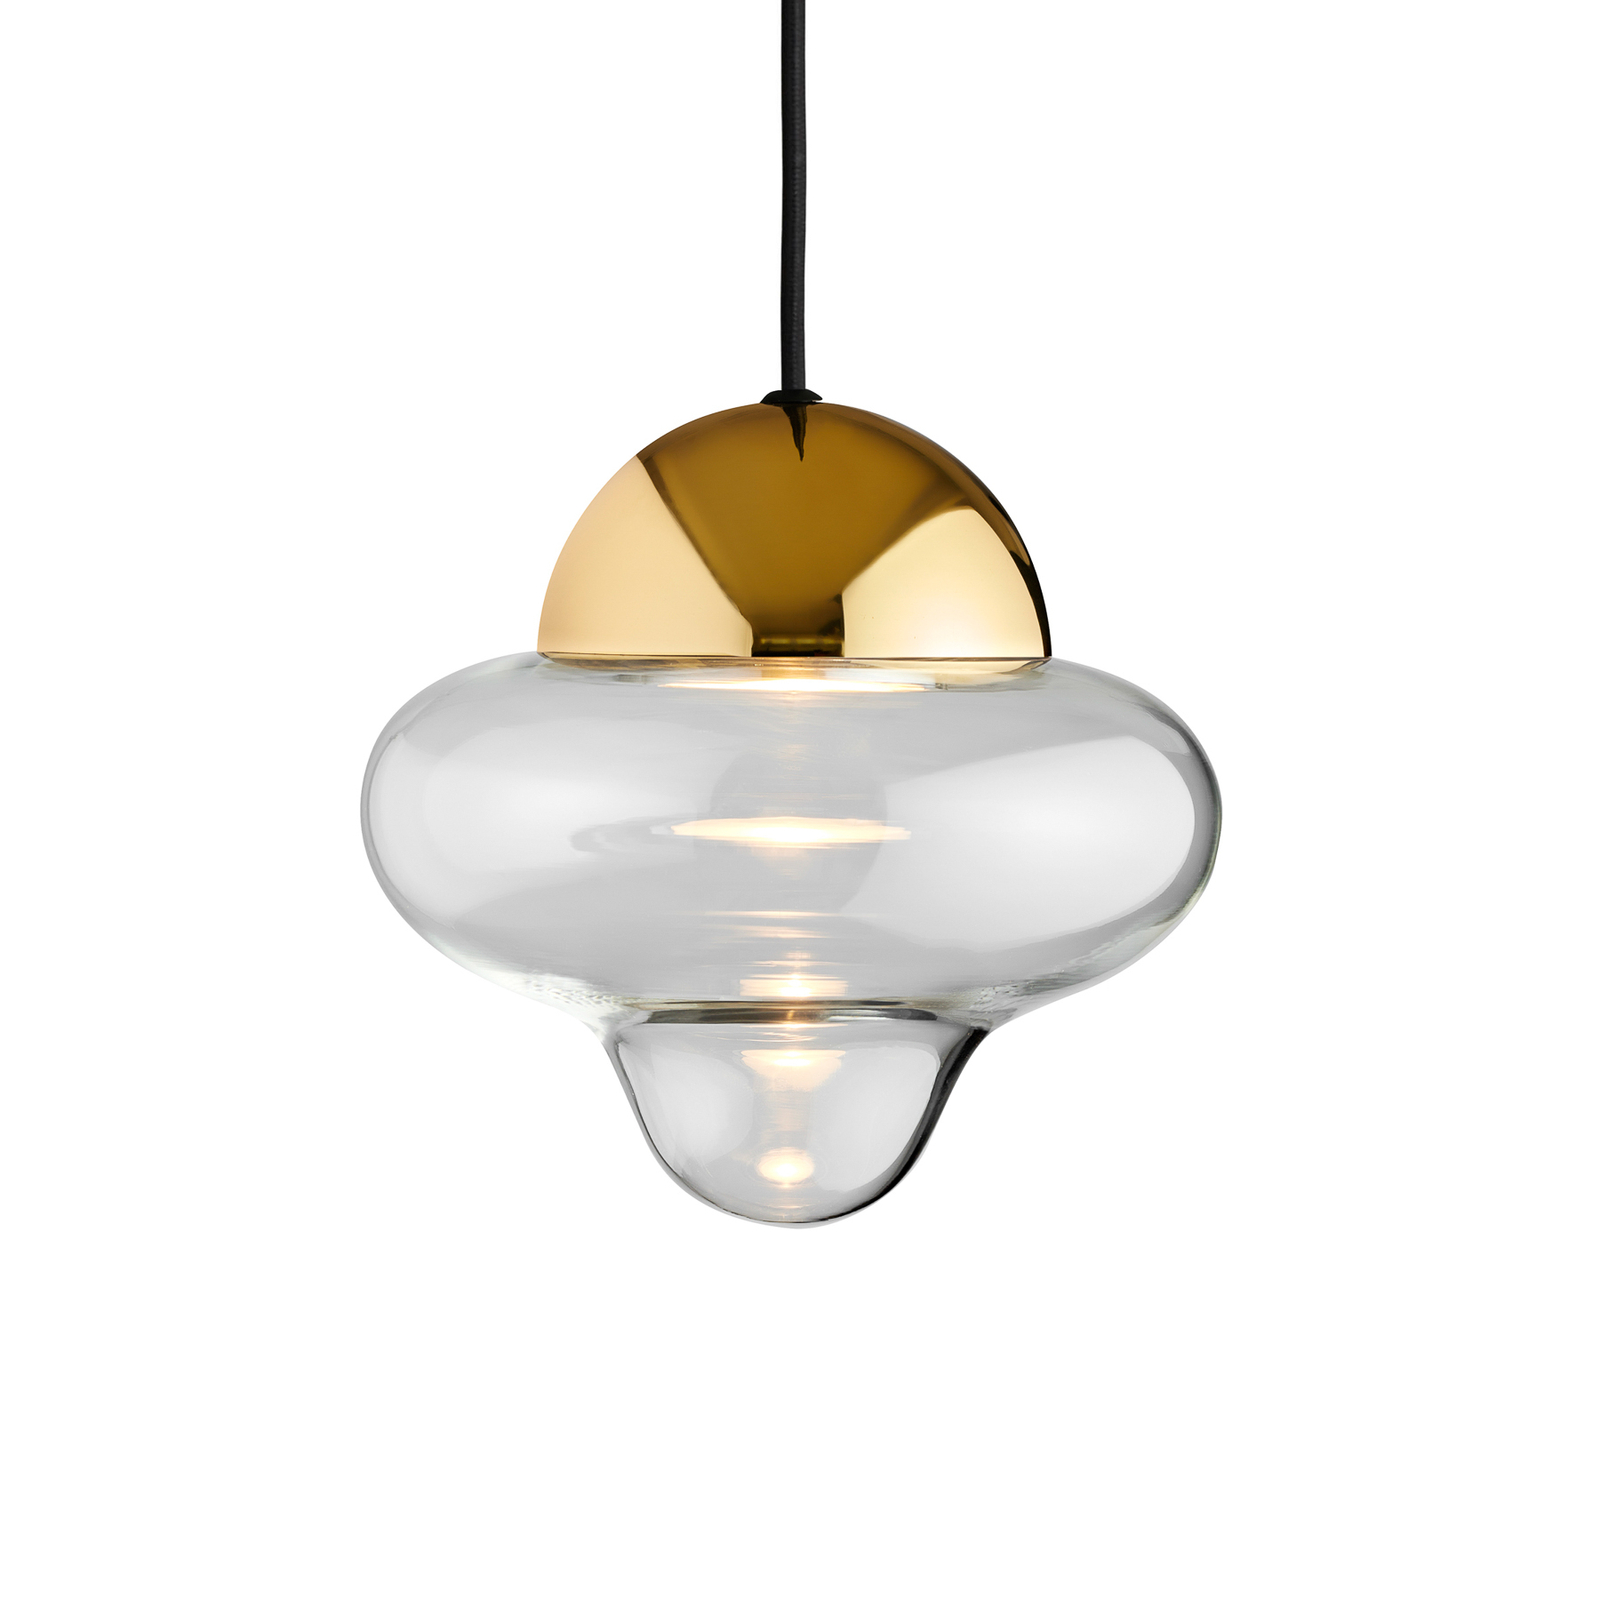 Lampa wisząca LED Nutty, przezroczysta / w kolorze złotym, Ø 18,5 cm, szkło